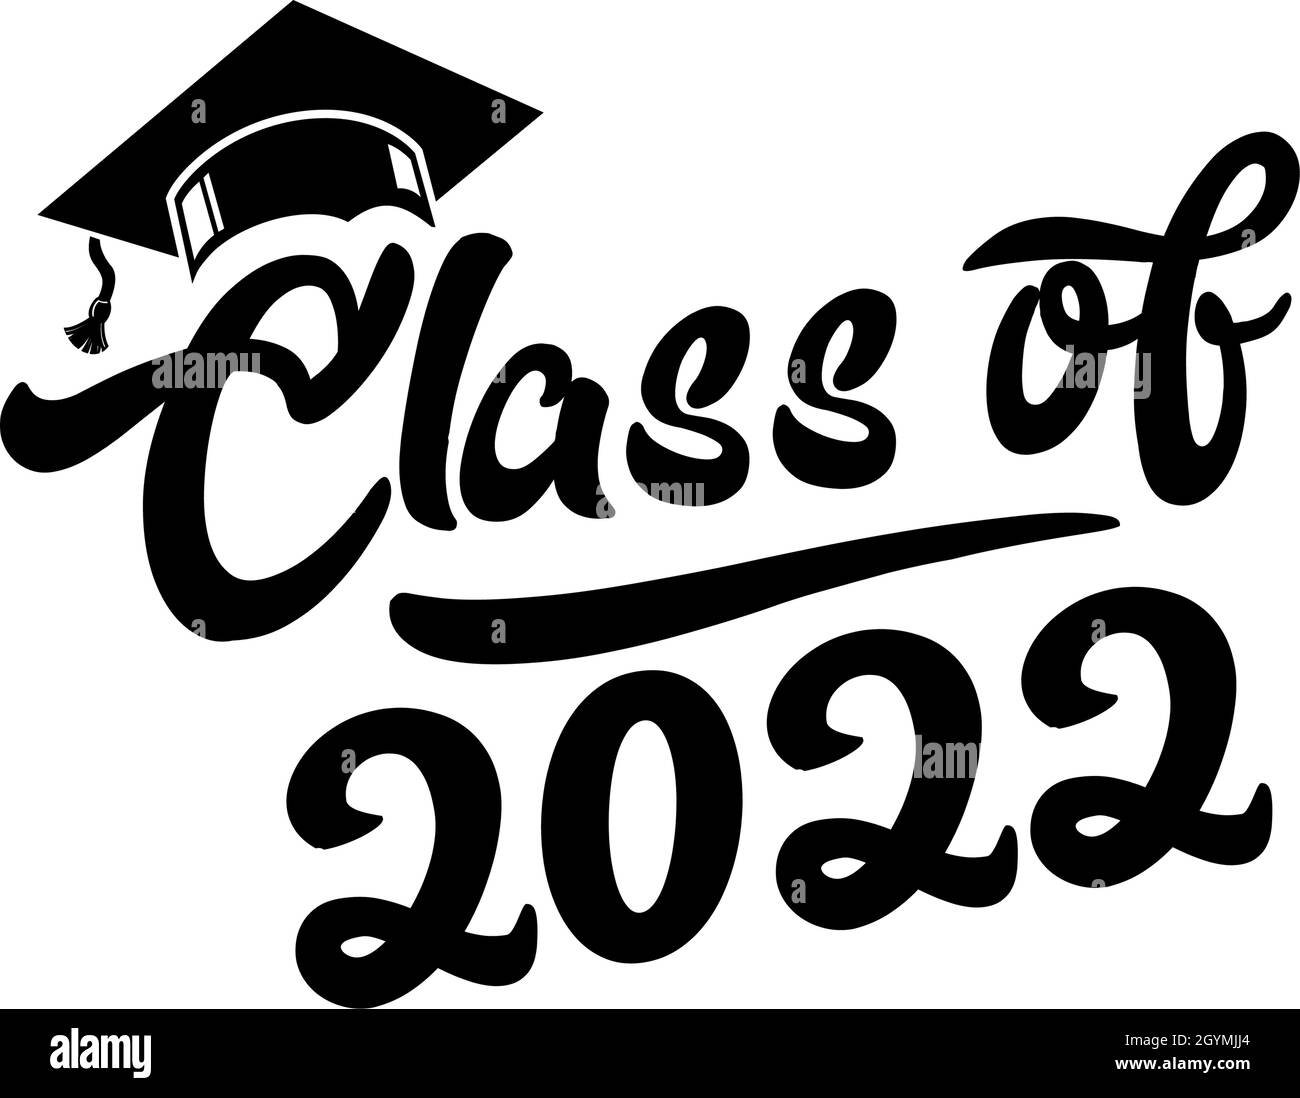 Beschriftung Klasse 2022 für Begrüßung, Einladungskarte. Text für Abschlussdesign, Glückwunschveranstaltung, T-Shirt, Party, Abitur oder College-Abschluss Stock Vektor